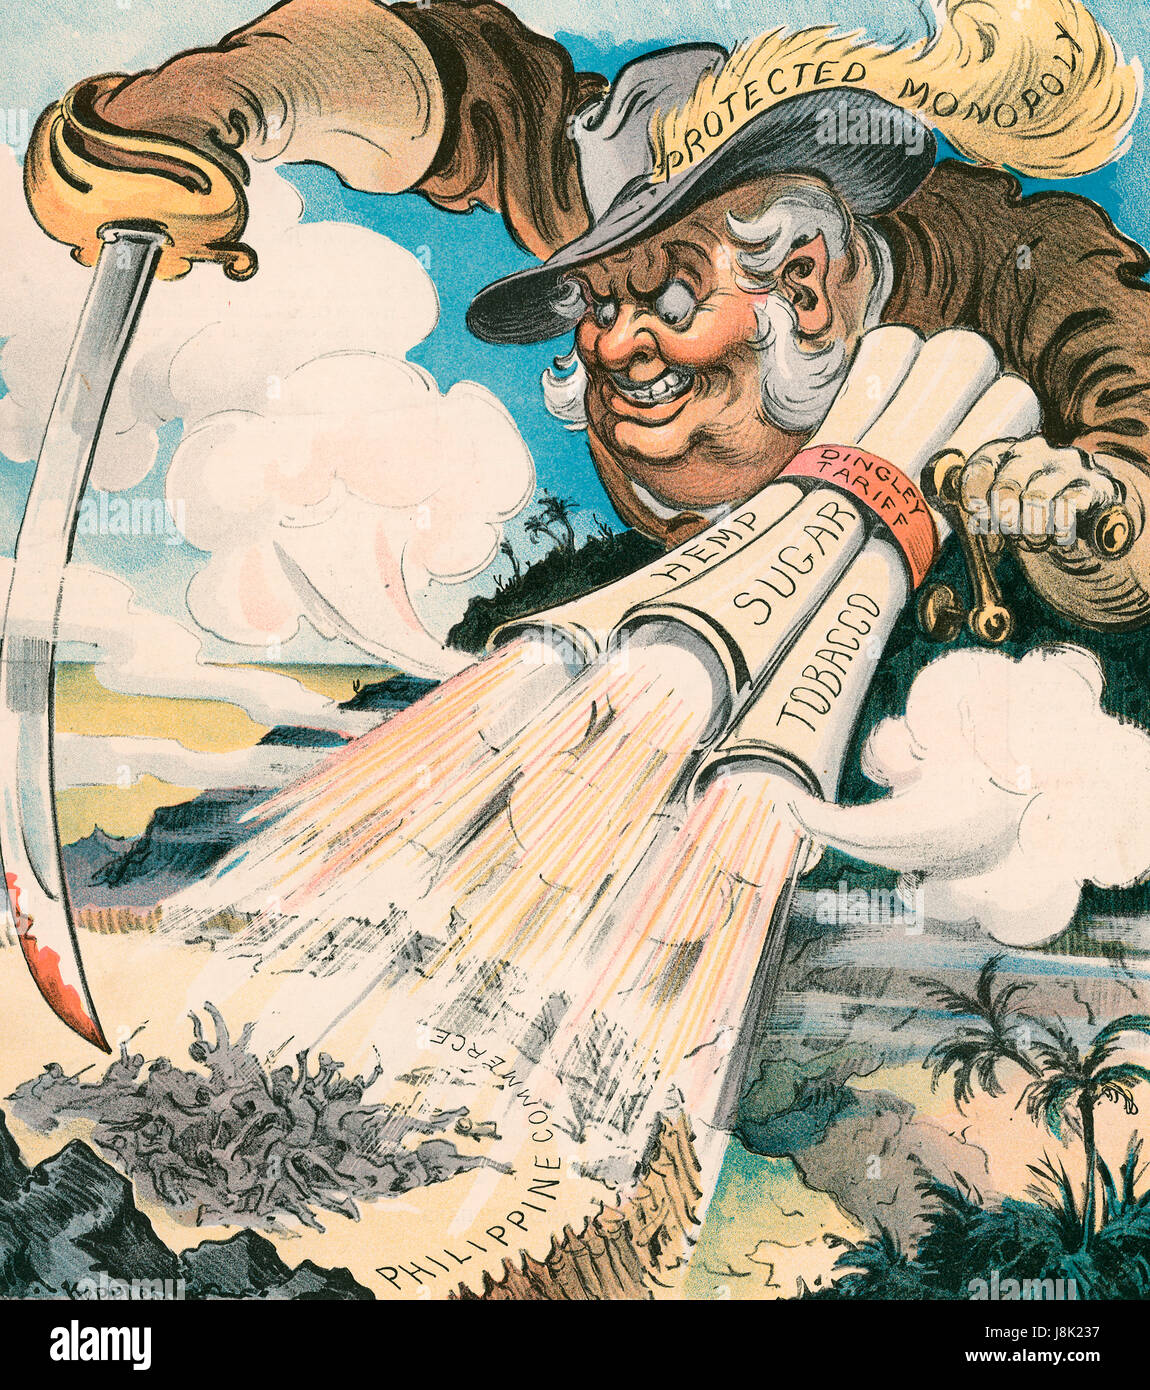 Difendere l'onore della bandiera americana - Illustrazione mostra una media, gigantesca figura etichettato 'Protetto' MONOPOLIO, vestito come un soldato, tenendo un grande sangue con punta di spada e la cottura di una mitragliatrice denominata 'Dingley tariffa " con barili etichettato 'la canapa, lo zucchero e il tabacco" la macellazione di un gruppo di filippini in un stockade etichettato 'Filippina di commercio". Cartoon politico, 1906 Foto Stock